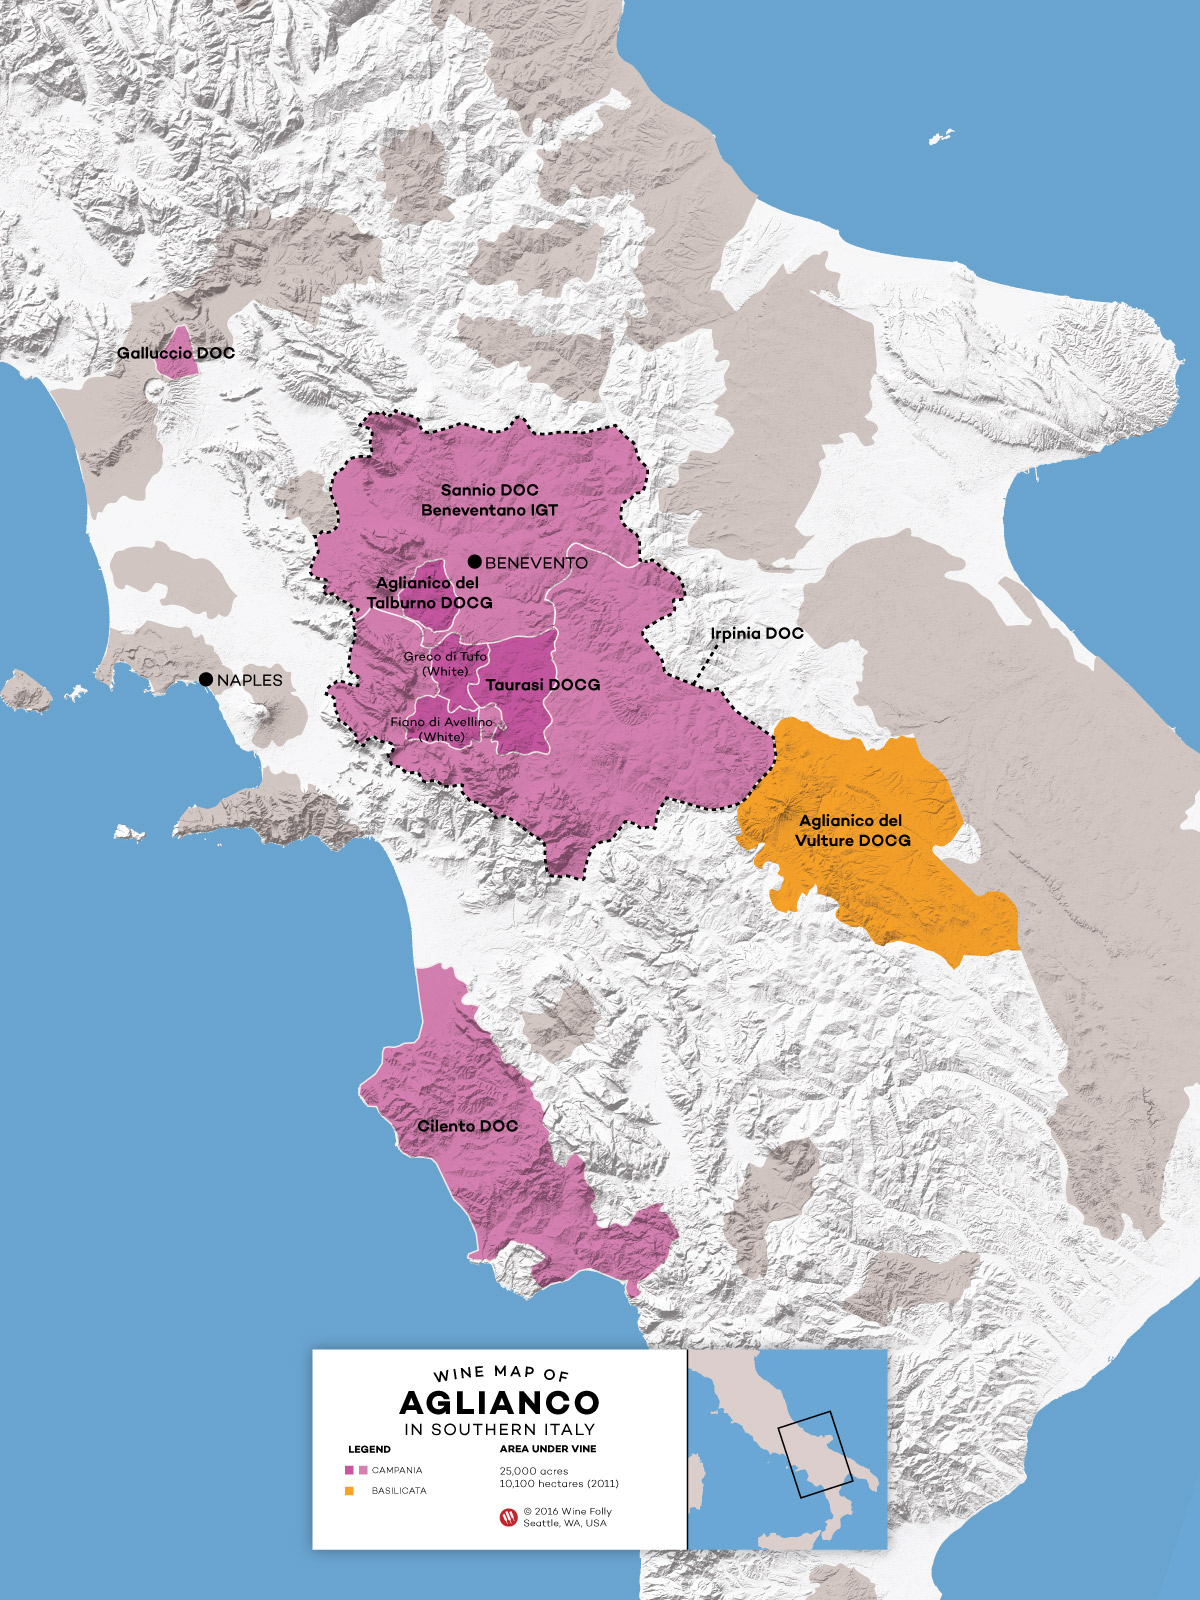 Wine-Map-Southern-Italy-Aglianico-Basilicata-Campania